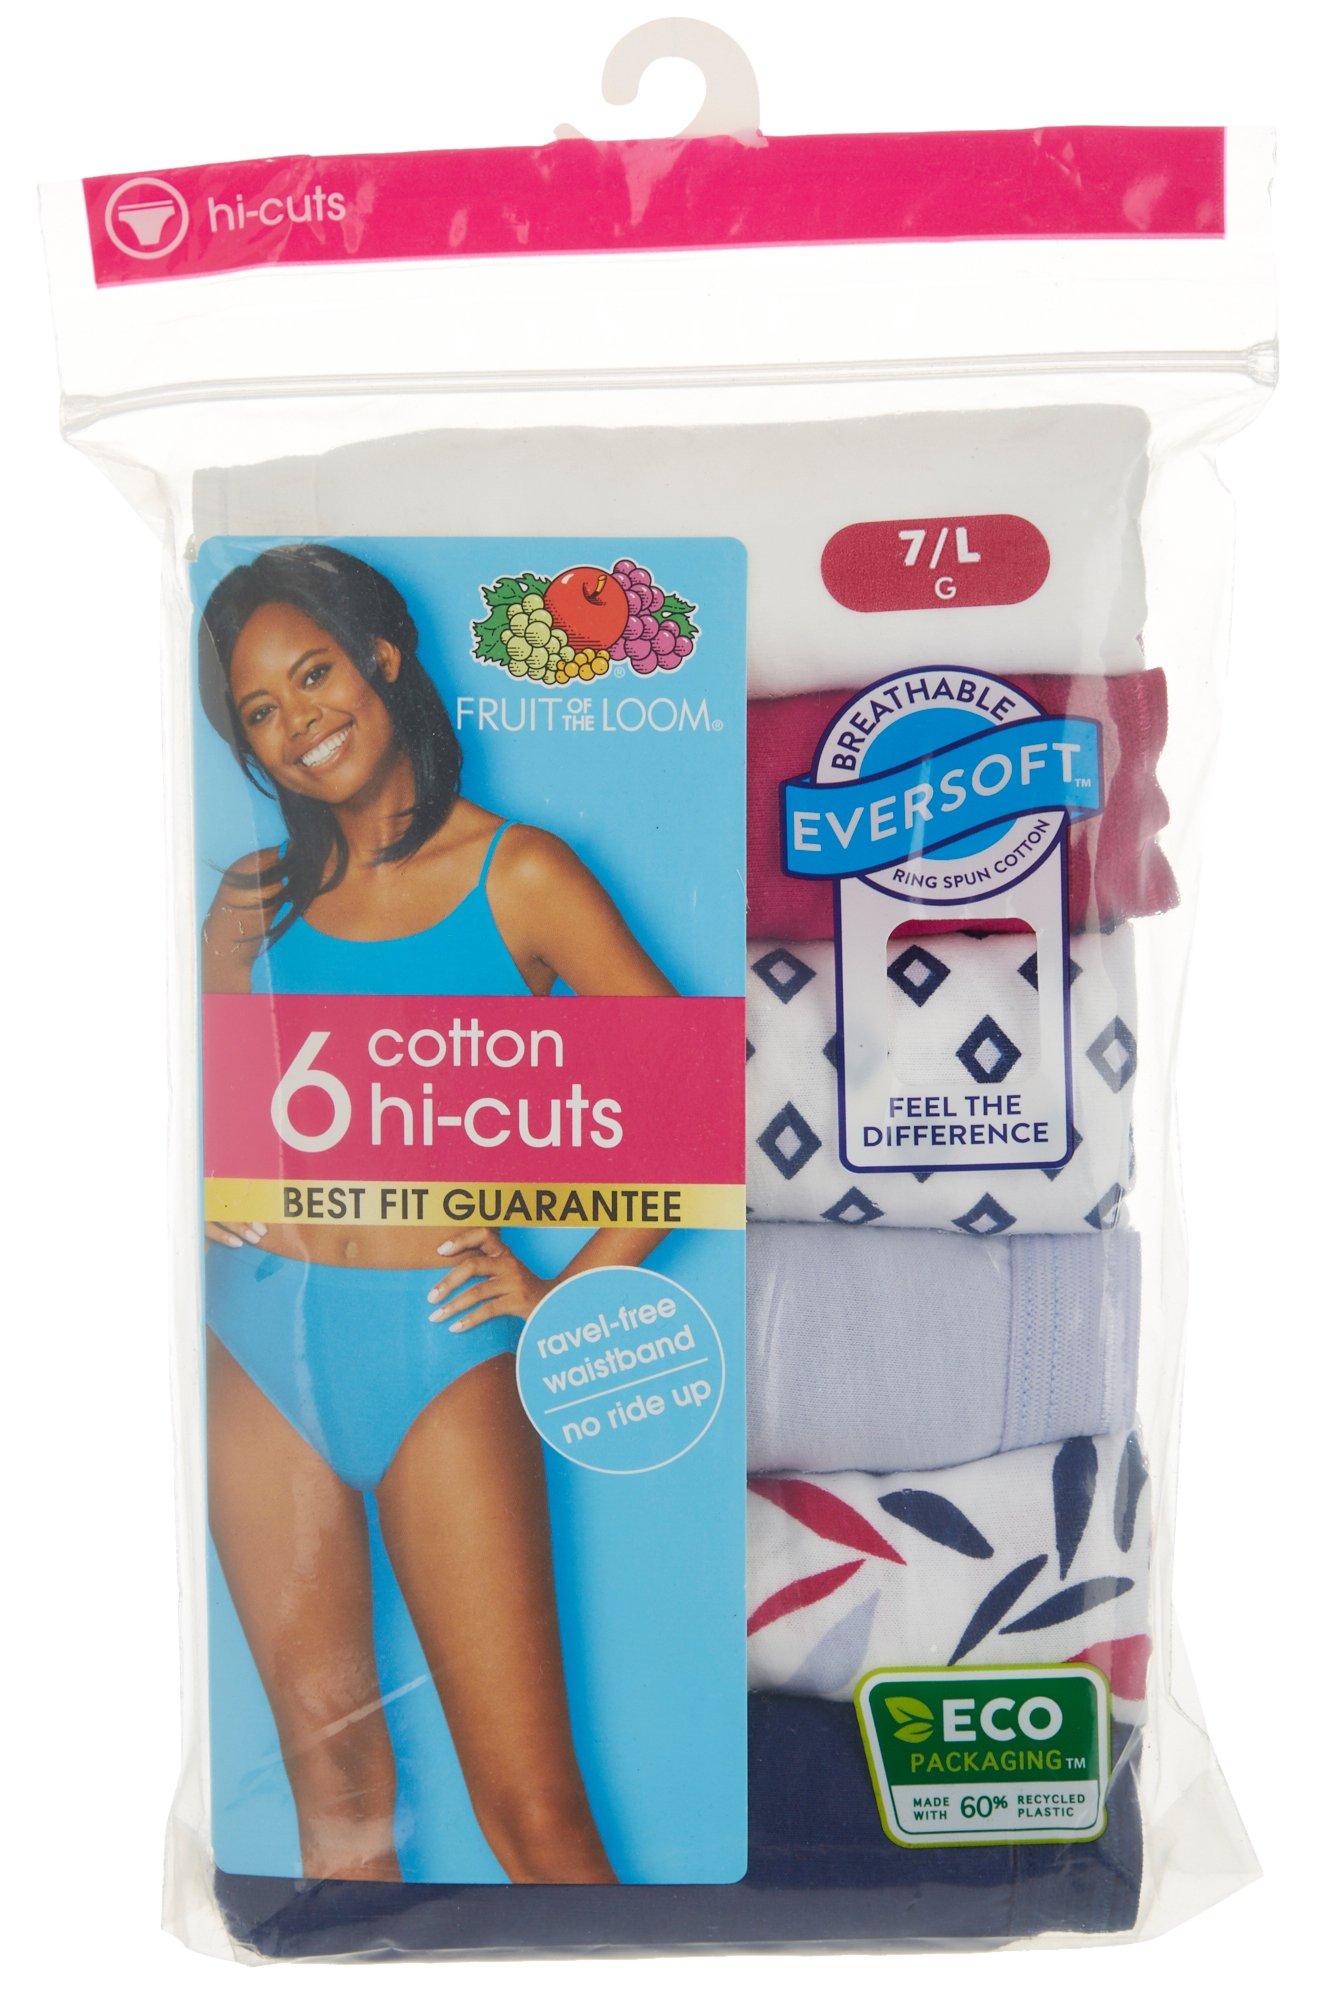 Fruit of the Loom Women's Hi Cut Underwear, 6 Pack